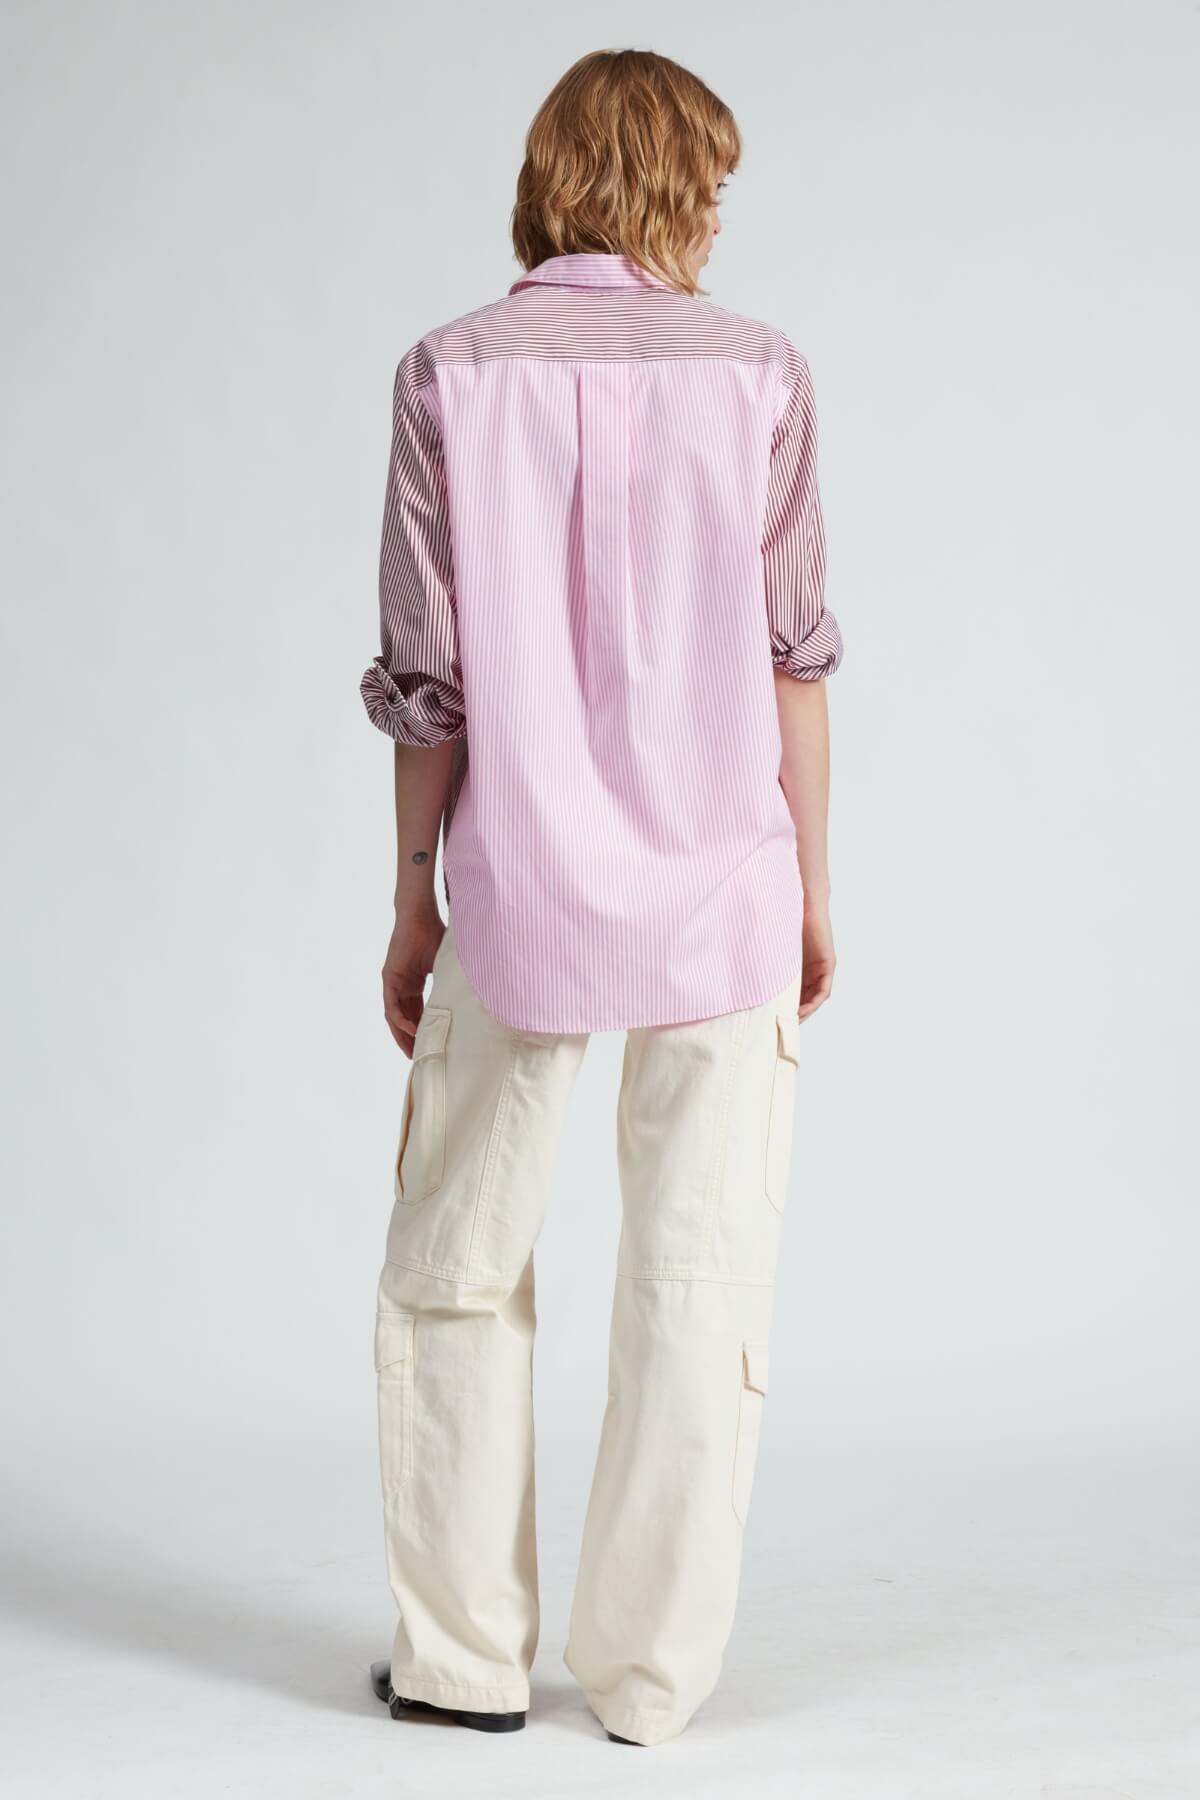 Rag & Bone Maxine Shirt - Pink Multi